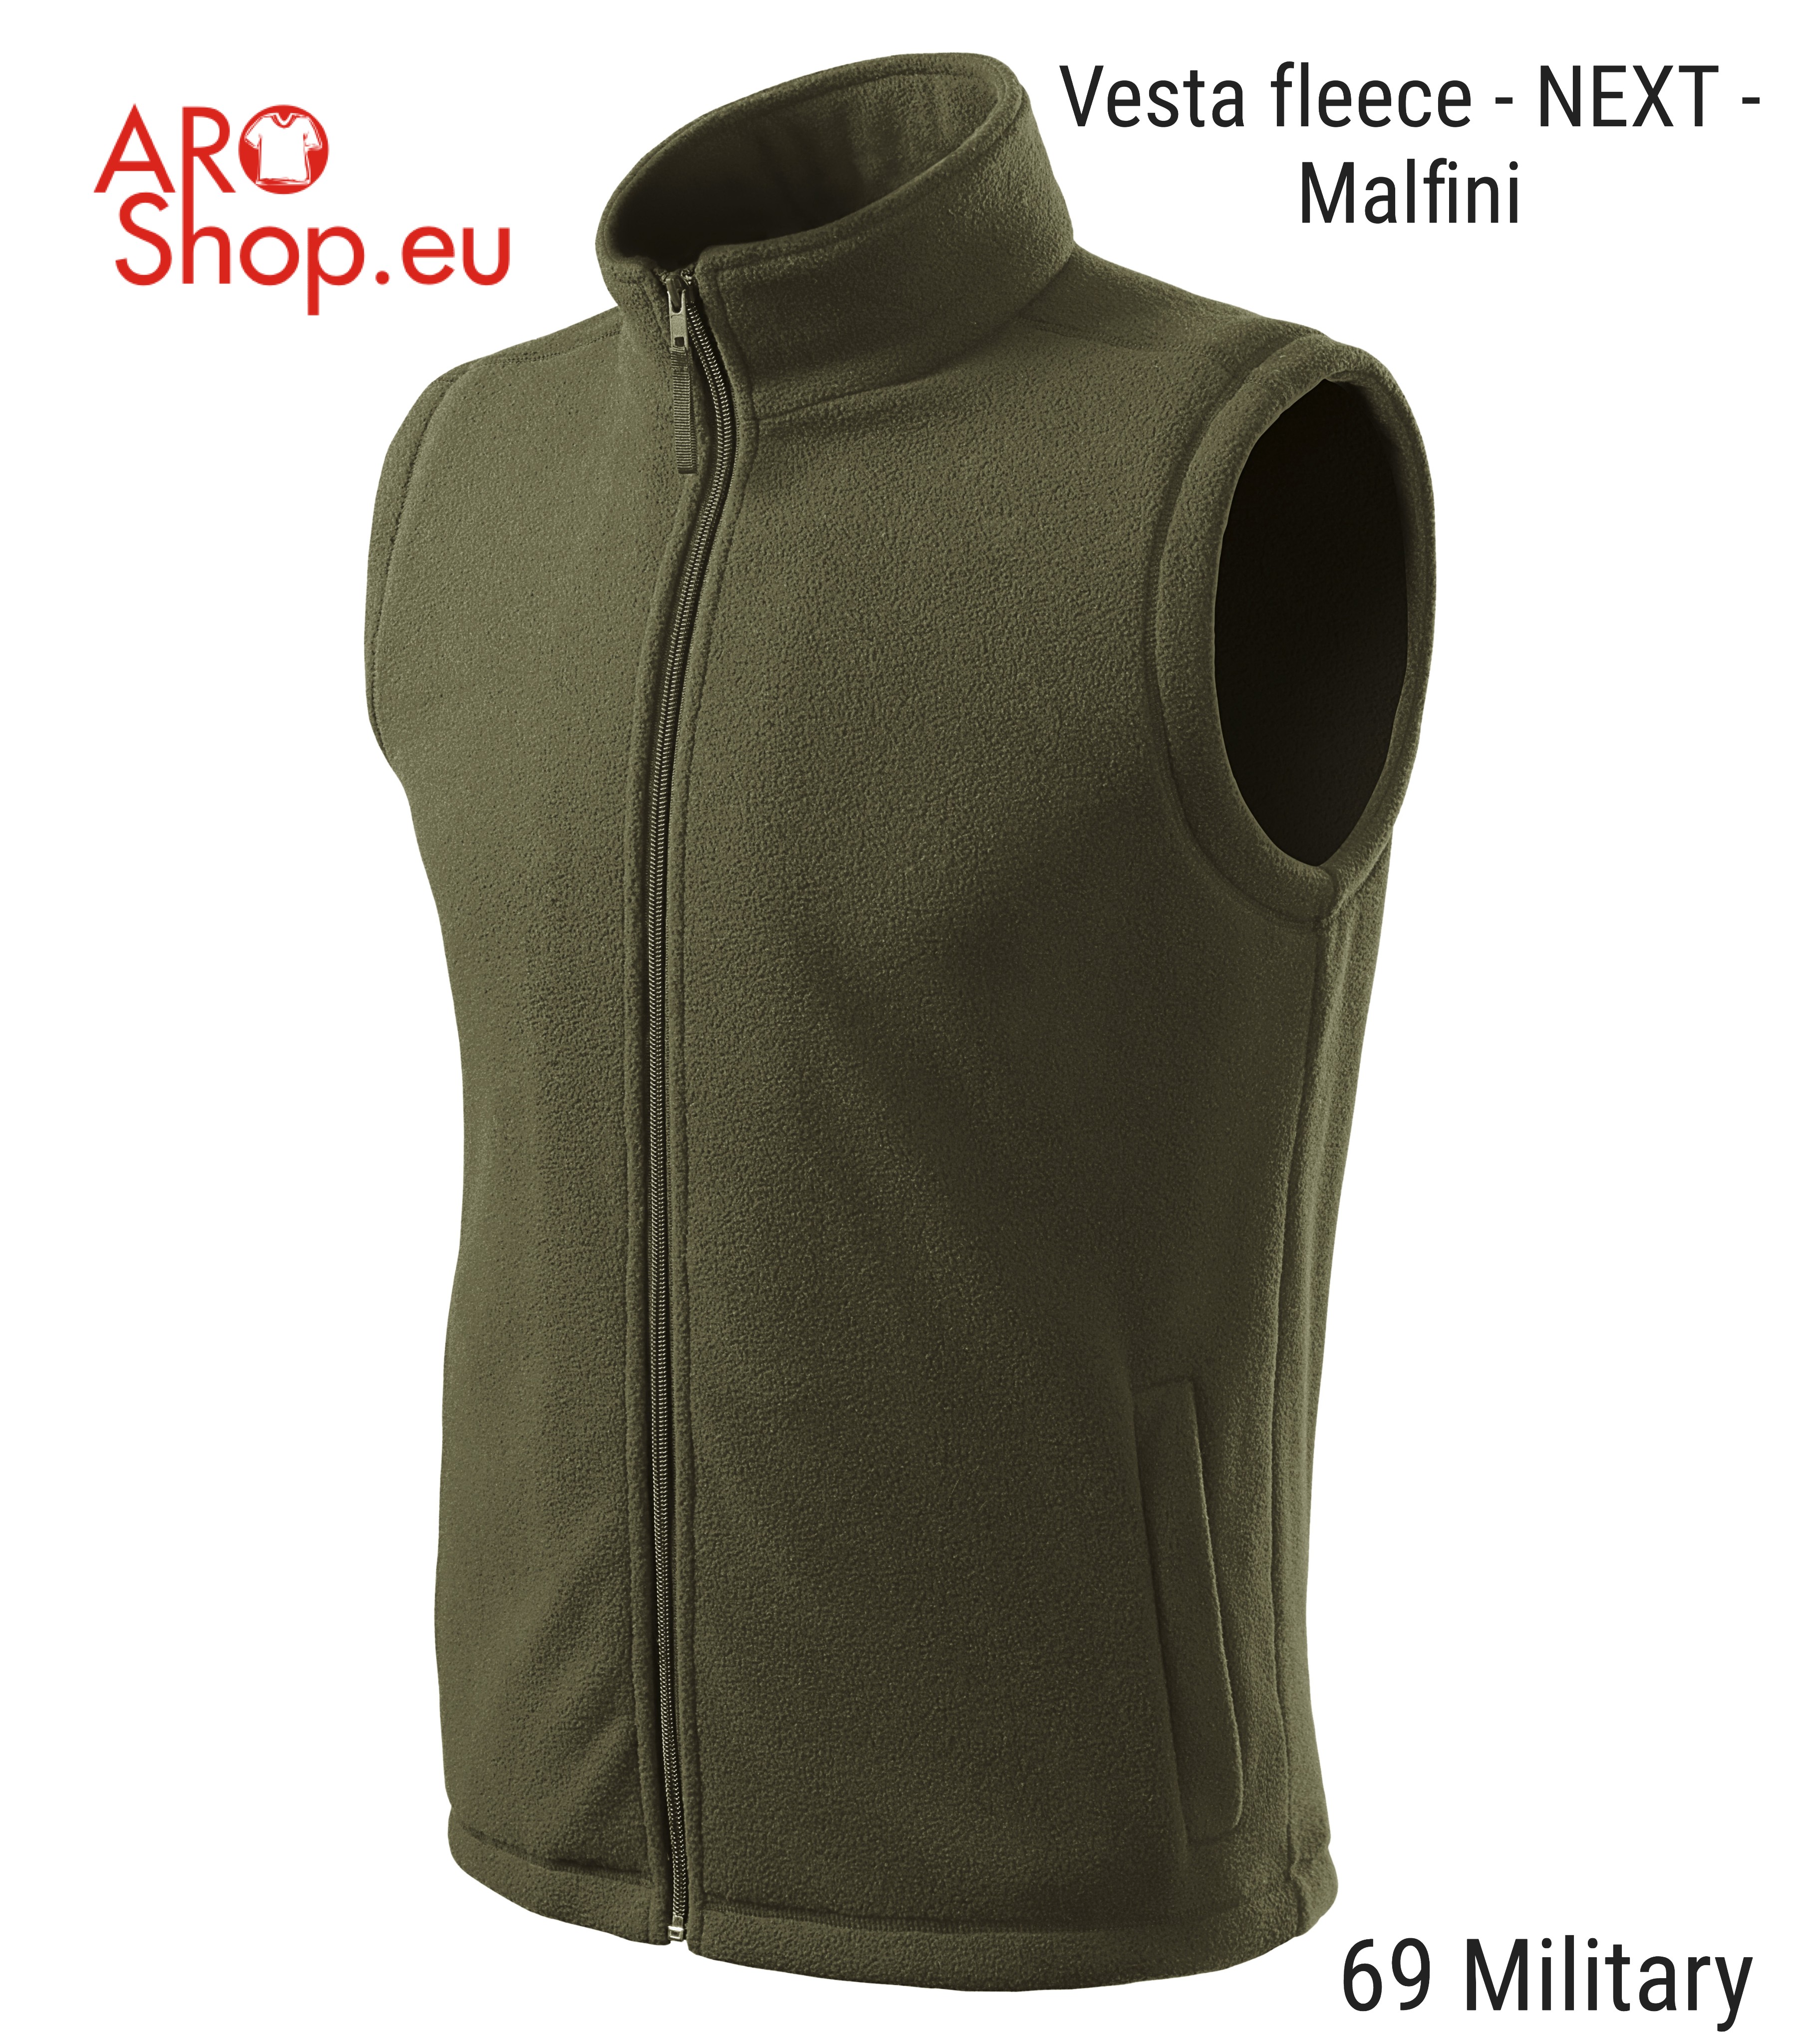 Vesta fleece - NEXT - Malfini (Velmi oblíbená unisexová fleecová vesta)